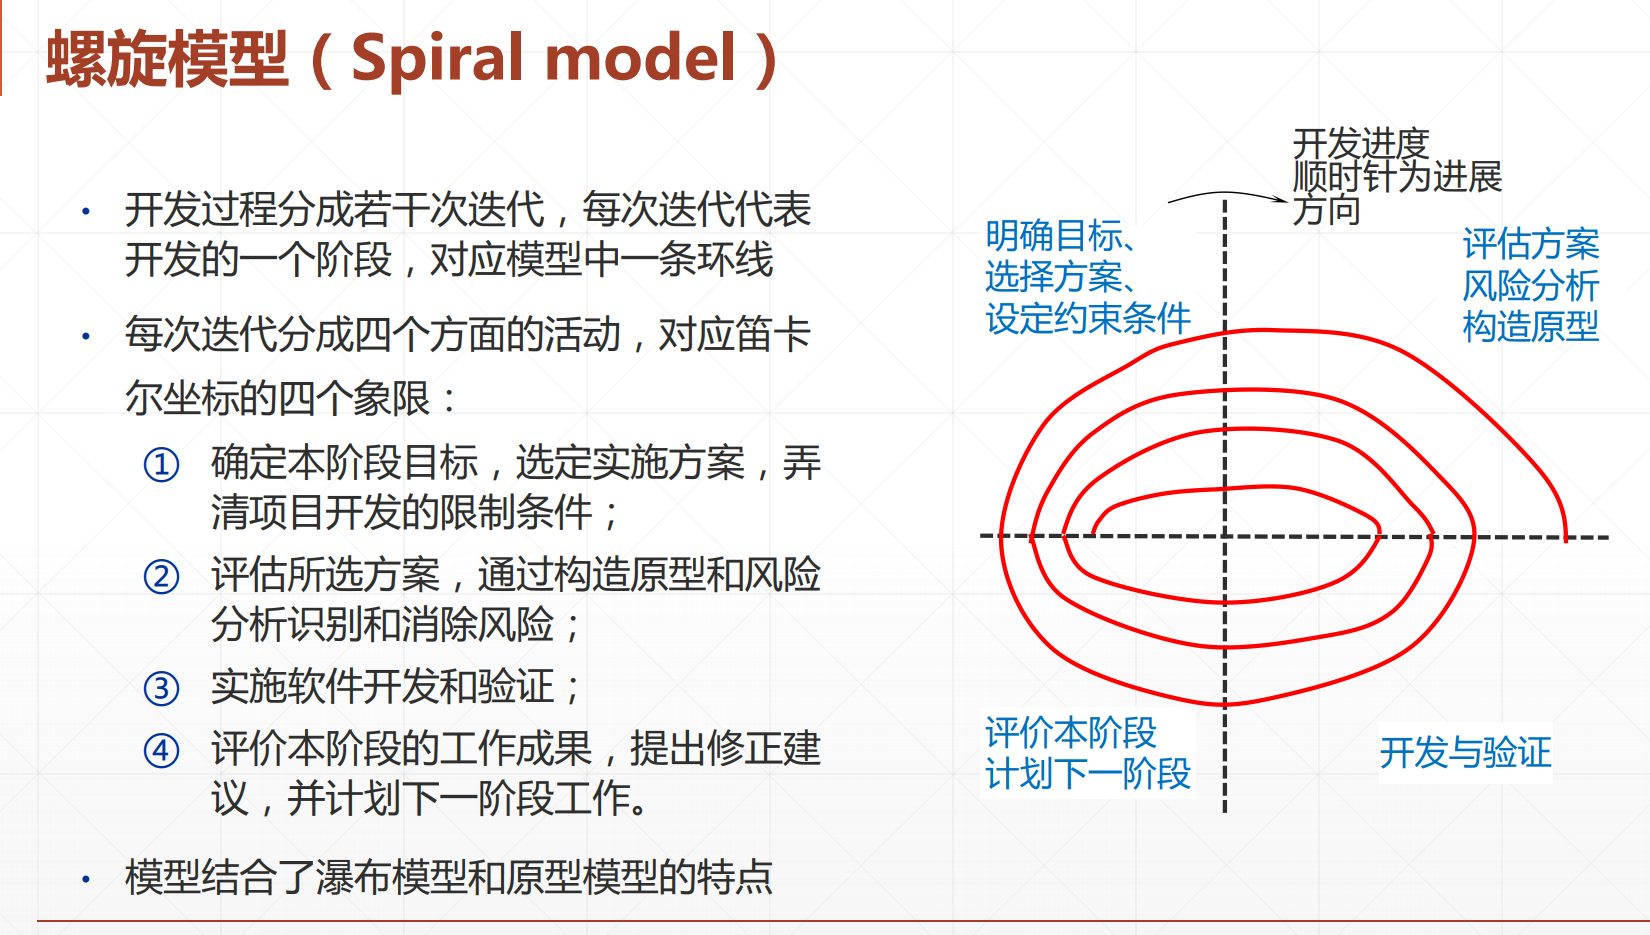 瀑布模型,v模型,原型模型,增量模型,螺旋模型,喷泉模型